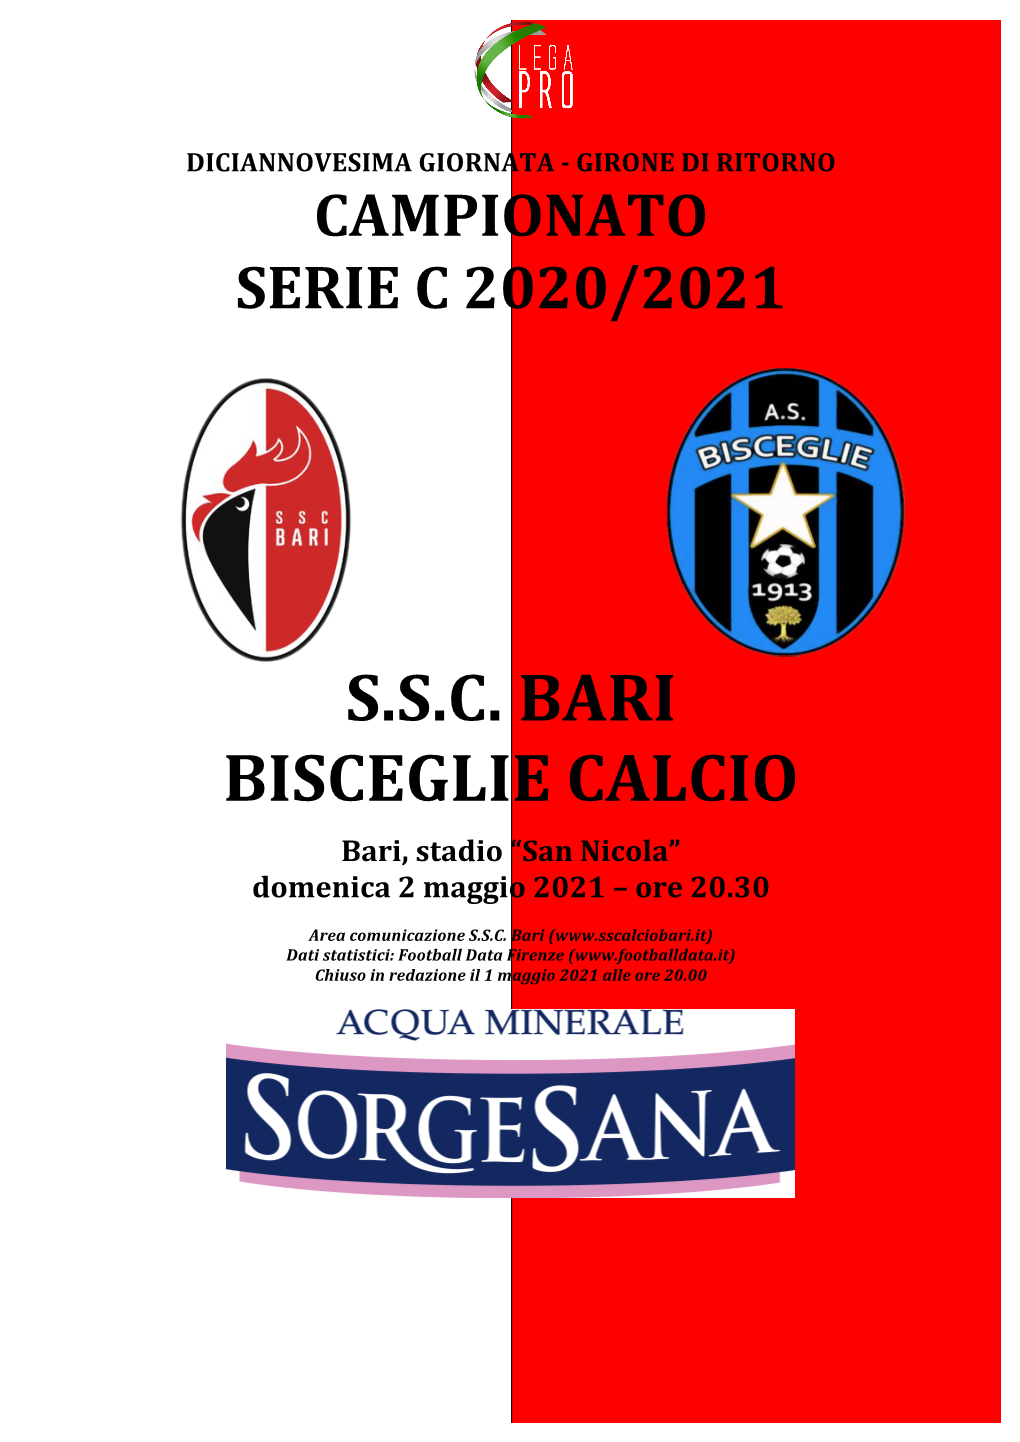 S.S.C. Bari Bisceglie Calcio